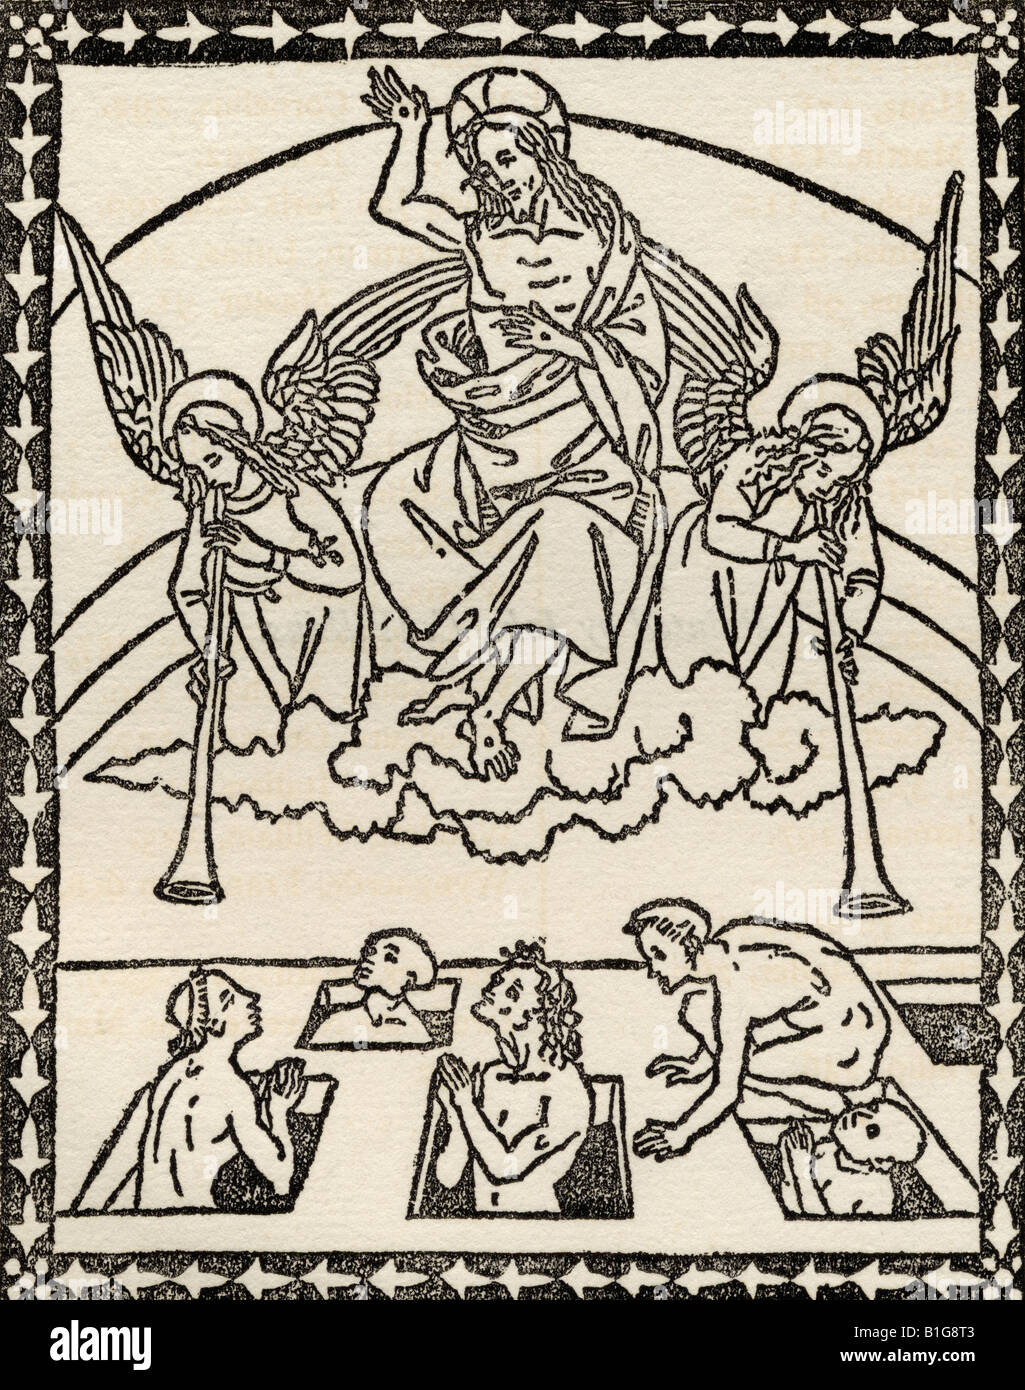 Faksimile des Jüngsten Gerichts, aus dem Brief et Evangelii, gedruckt in Florenz 1495. Stockfoto